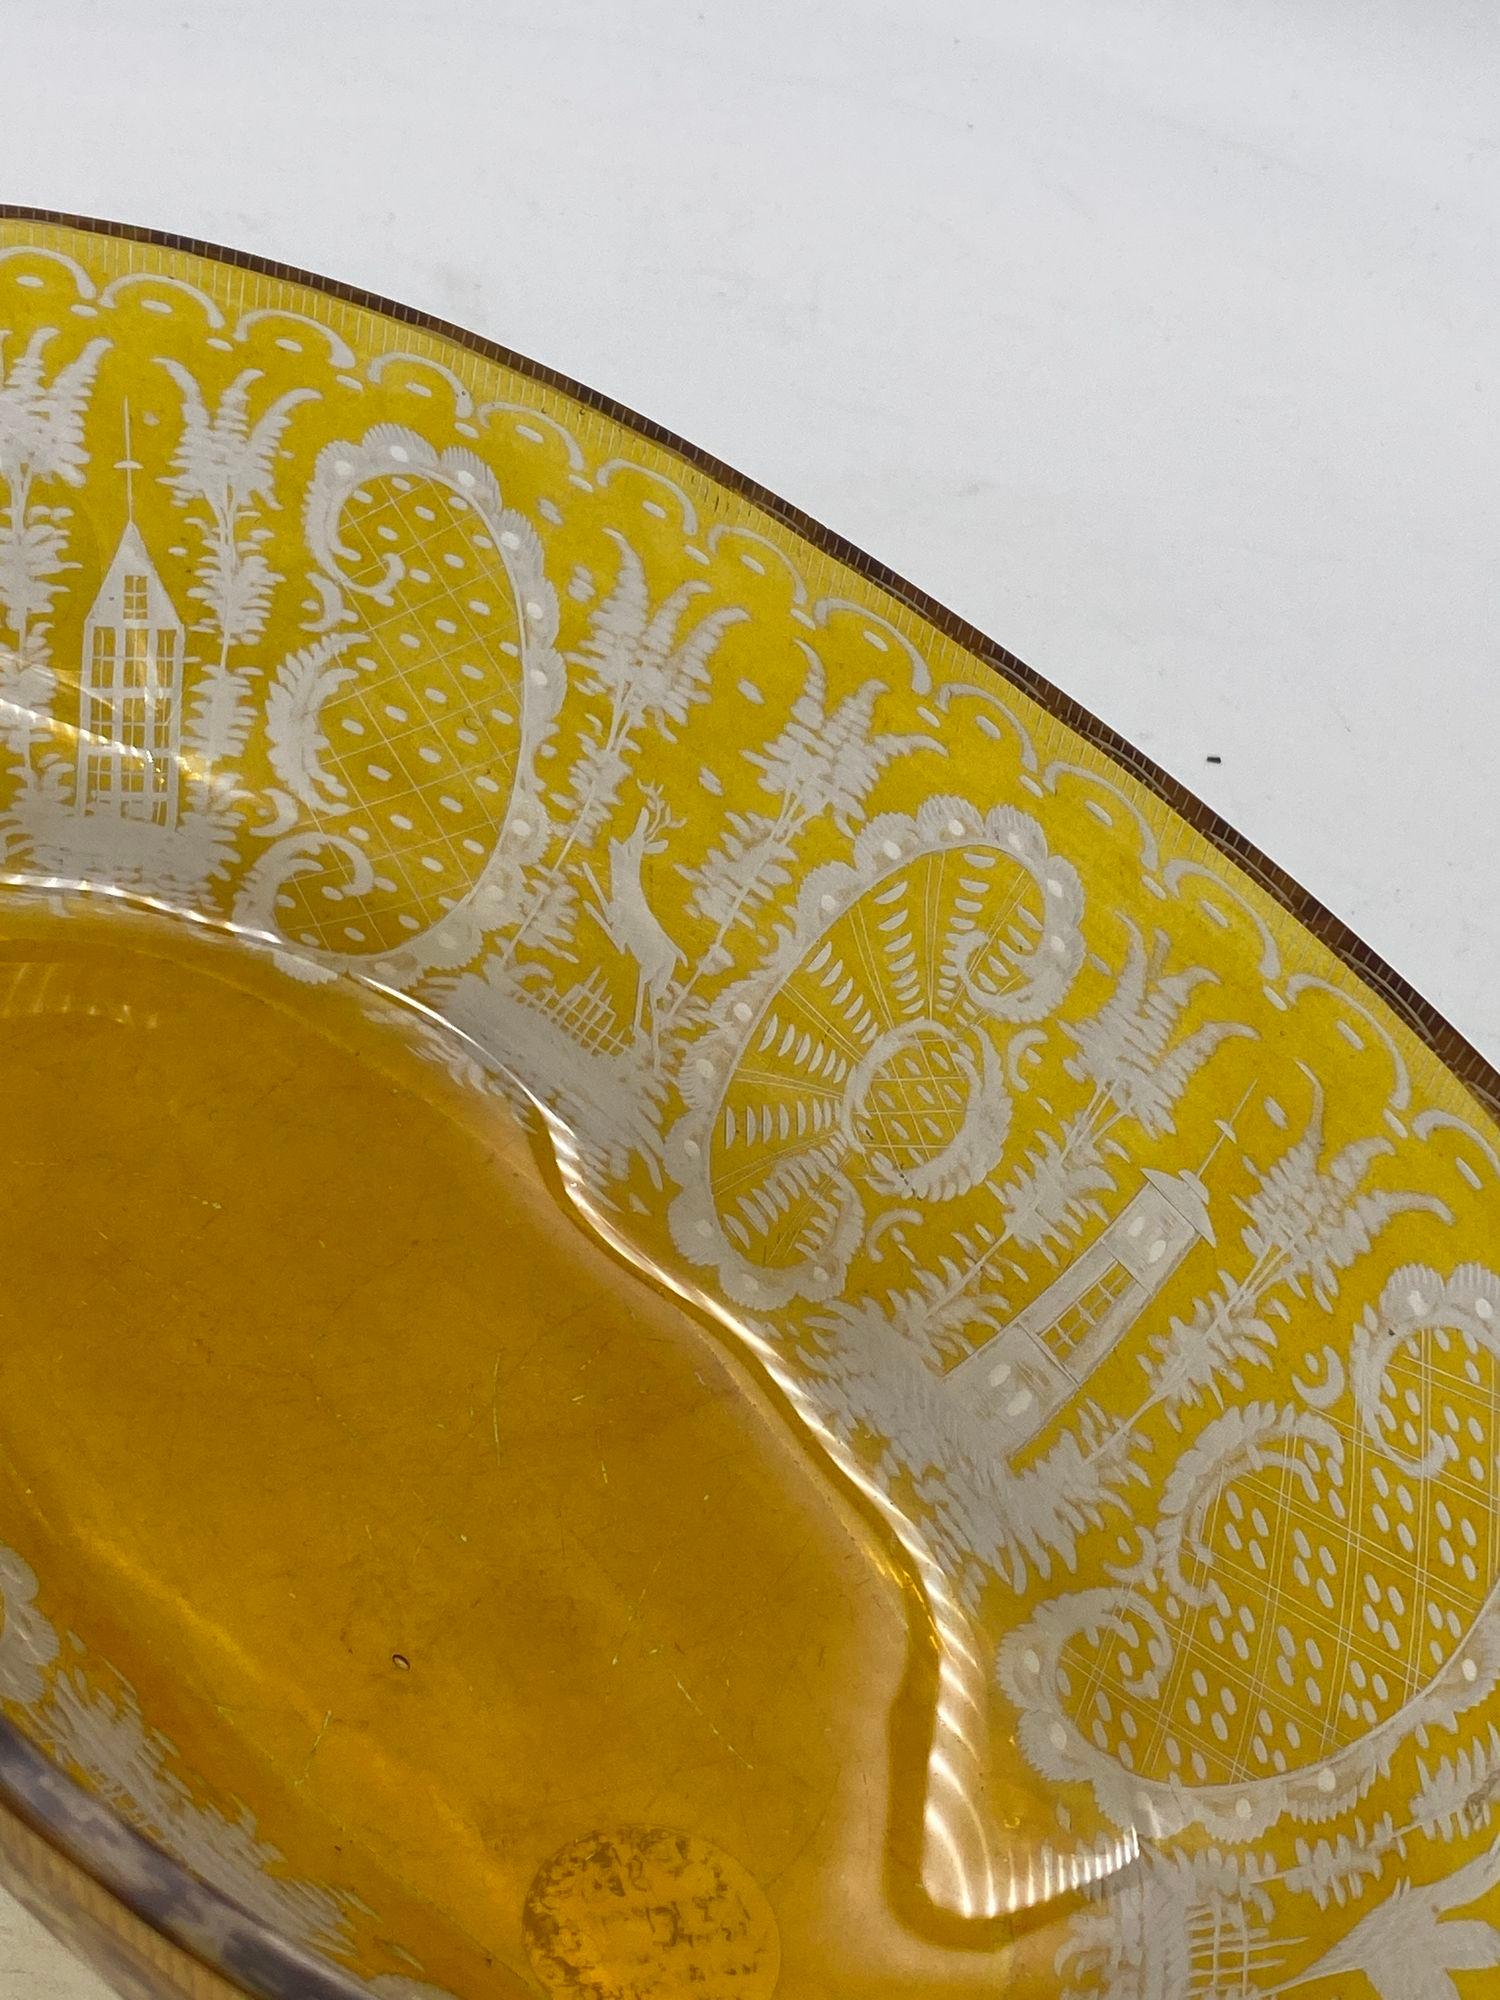 Coupe de forme évasée en verre ambré de Bohême, avec un décor de superposition jaune gravé à l'acide, représentant des grands tétras ou des gibiers à plumes similaires dans une scène au bord d'un lac.